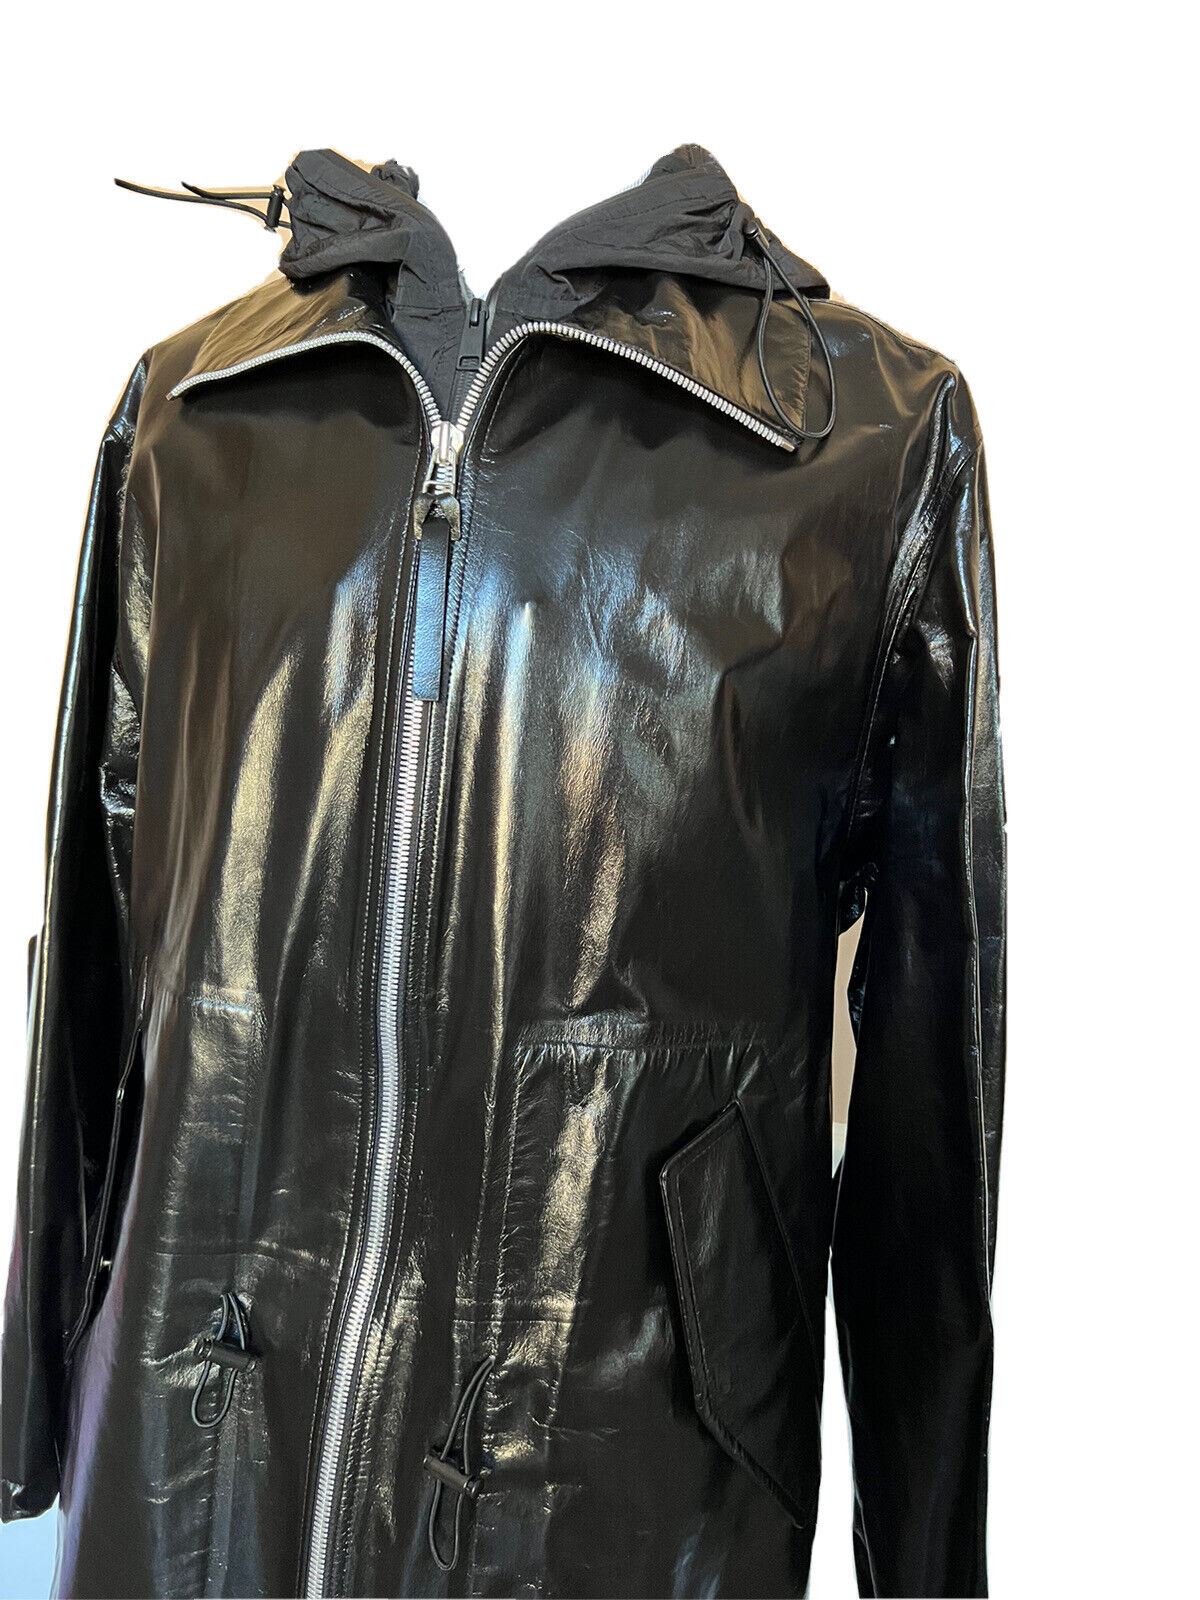 NWT $7500 Женское пальто Bottega Veneta из блестящей кожи черного цвета 633444 Маленькое